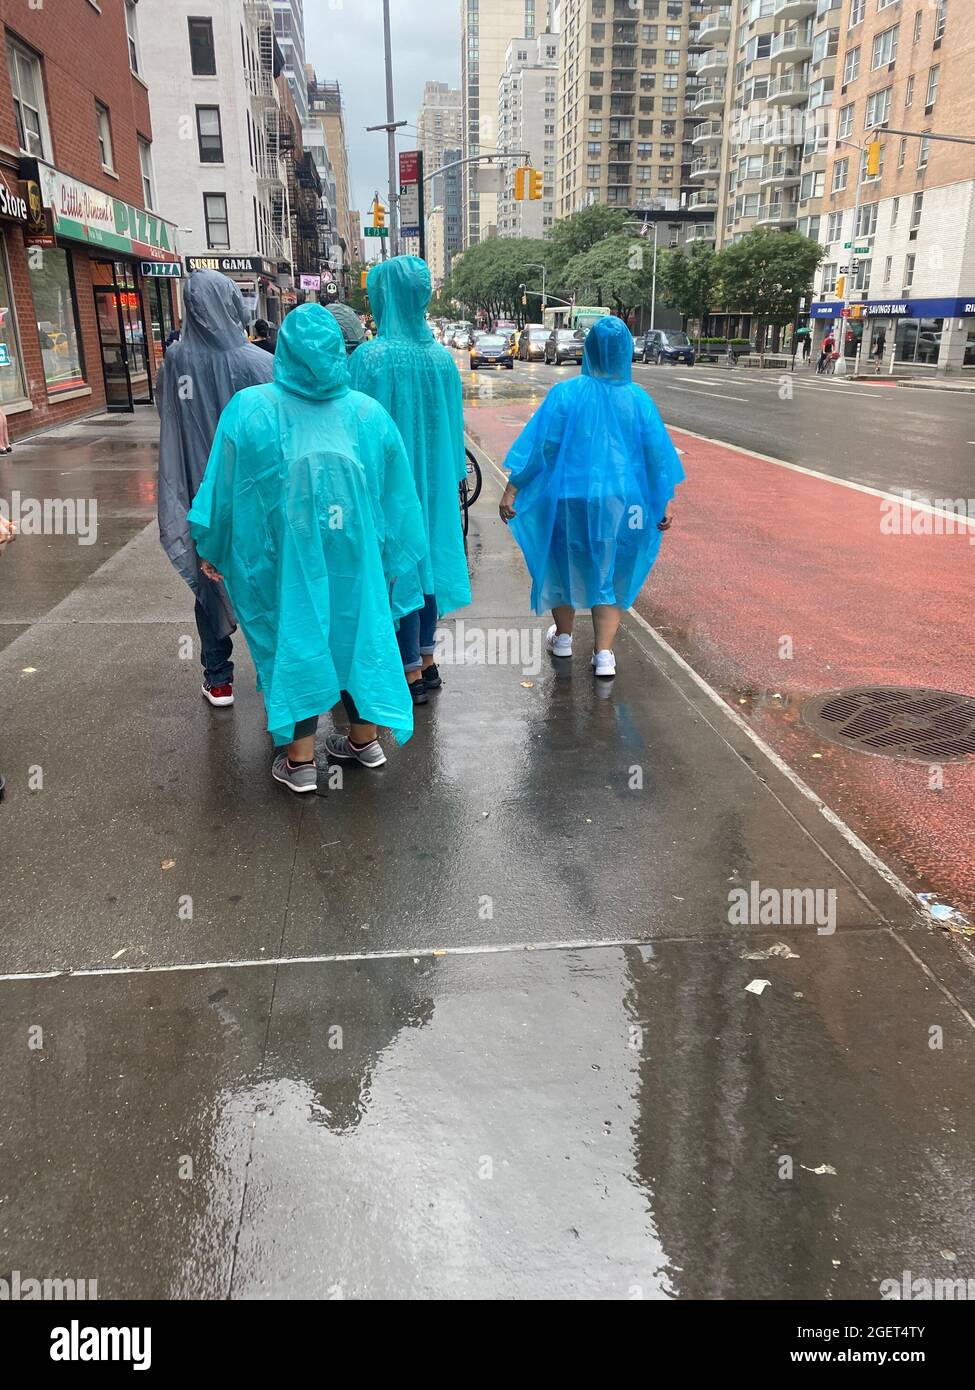 Gruppe mit blauen Regenmantel Ponchos an einem regnerischen Tag in Manhattan, NYC. Stockfoto